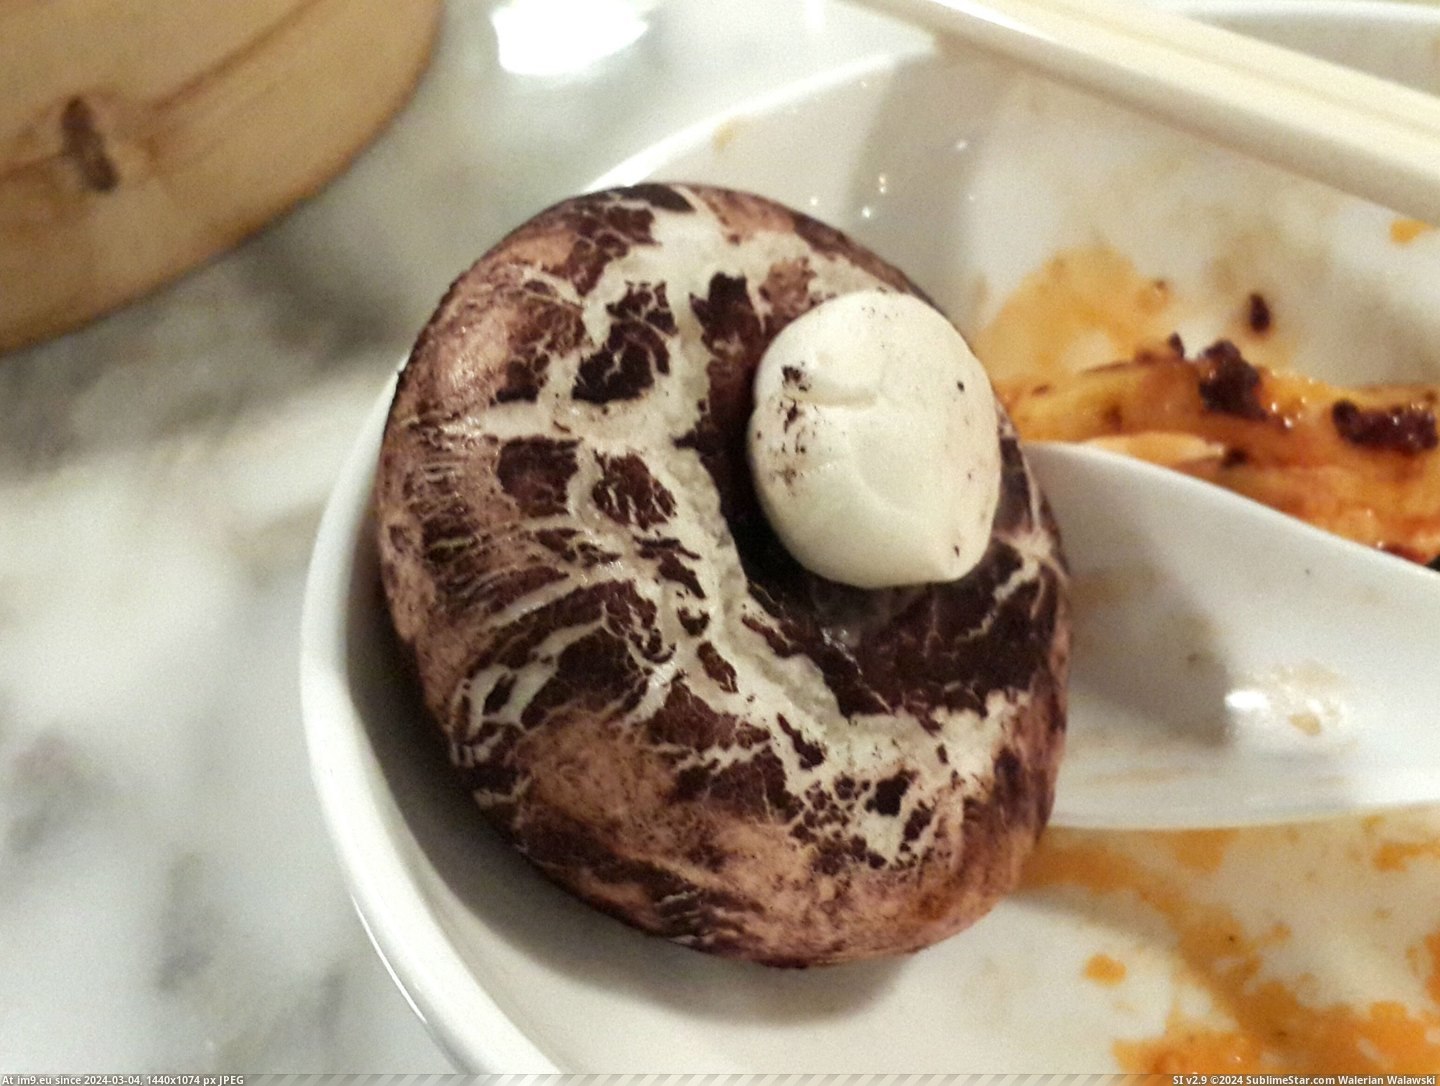 #Real #Mushroom #Buns #Mushrooms [Mildlyinteresting] Mushroom steamed buns that look like real mushrooms 1 Pic. (Obraz z album My r/MILDLYINTERESTING favs))